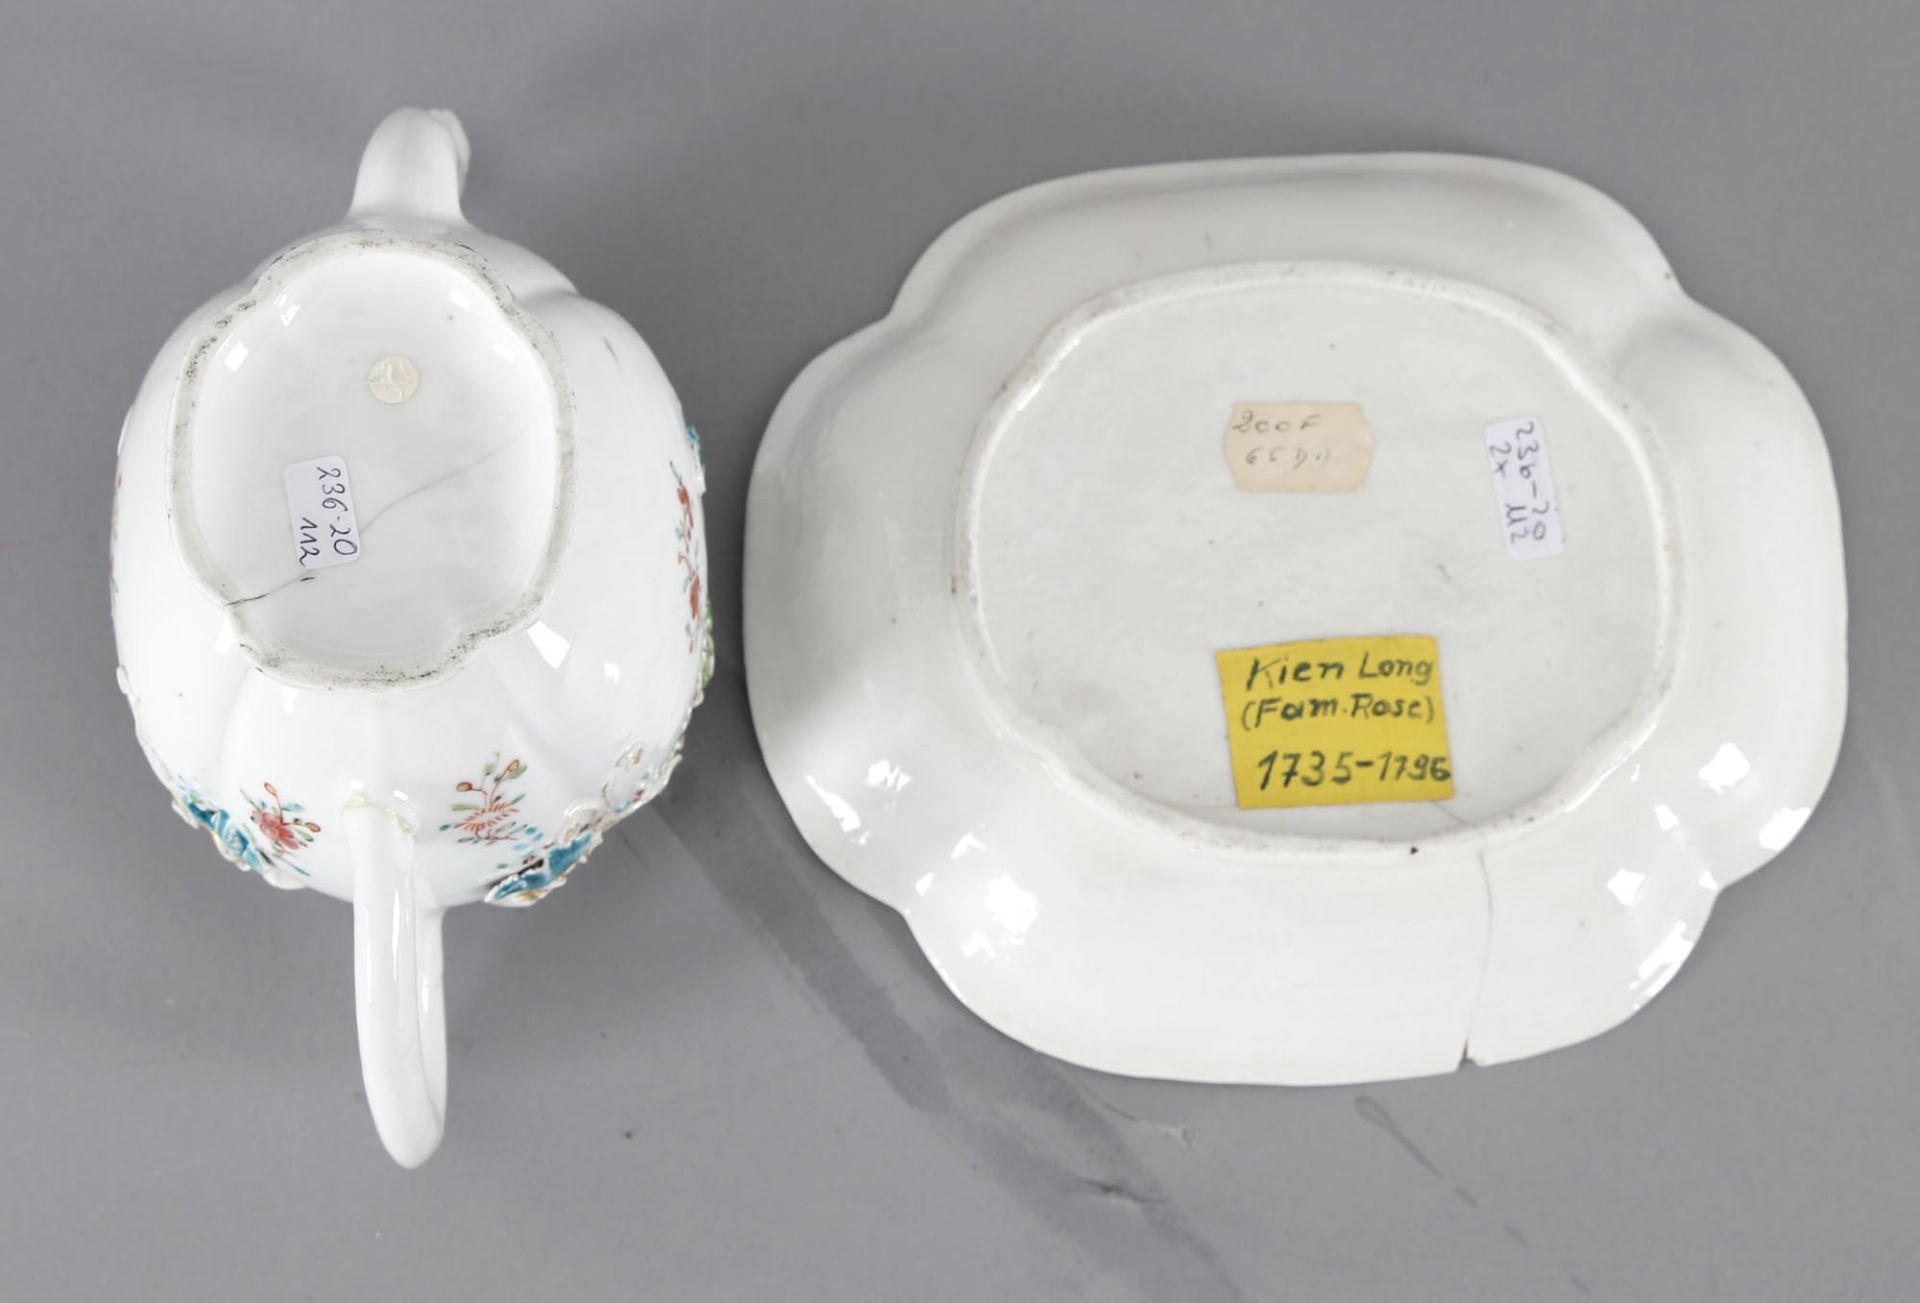 Chinesische Teekanne auf Teller, Porzellan, China, 18. Jh. - Bild 2 aus 2